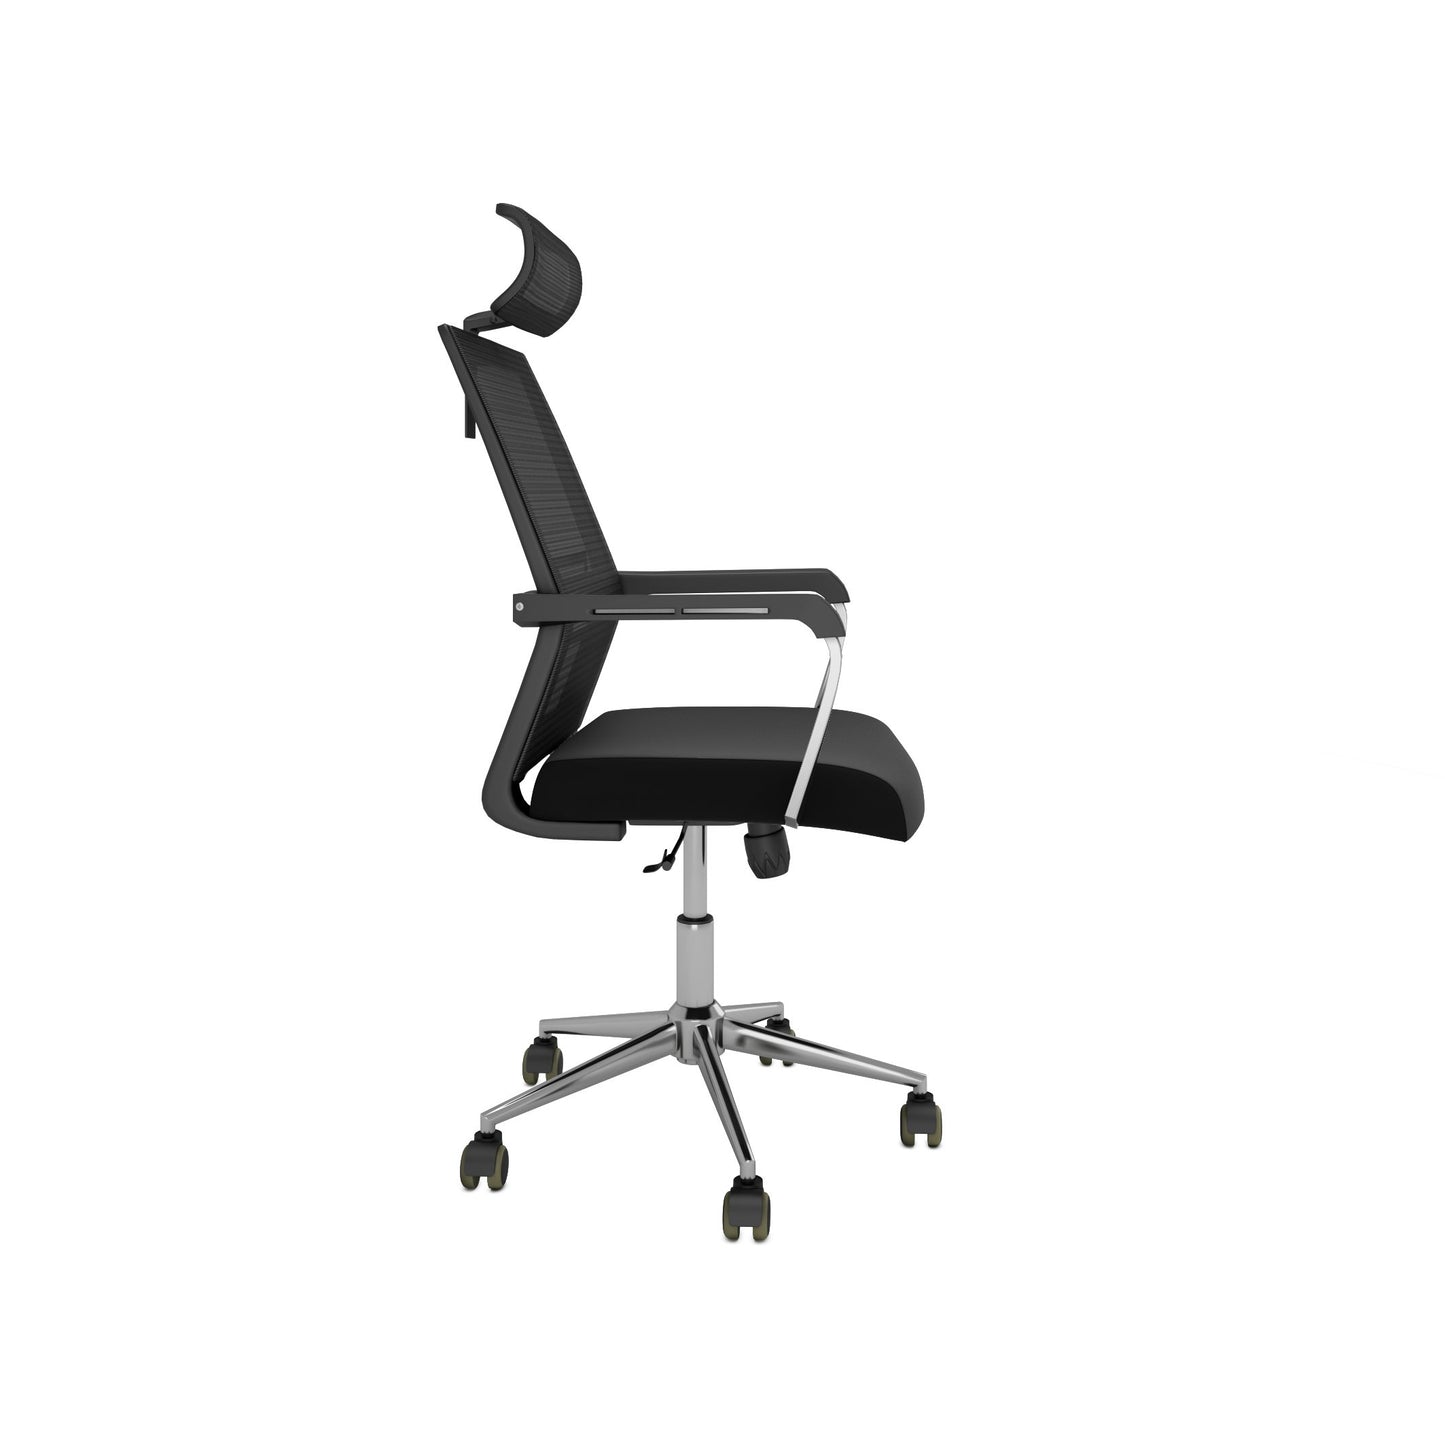 Chaise de bureau Nancy's Jacksonville - Chaise pivotante - Dossier inclinable - Maille - Ergonomique - Appui-tête - Noir - Plastique - 55 x 56 x 115-131 cm